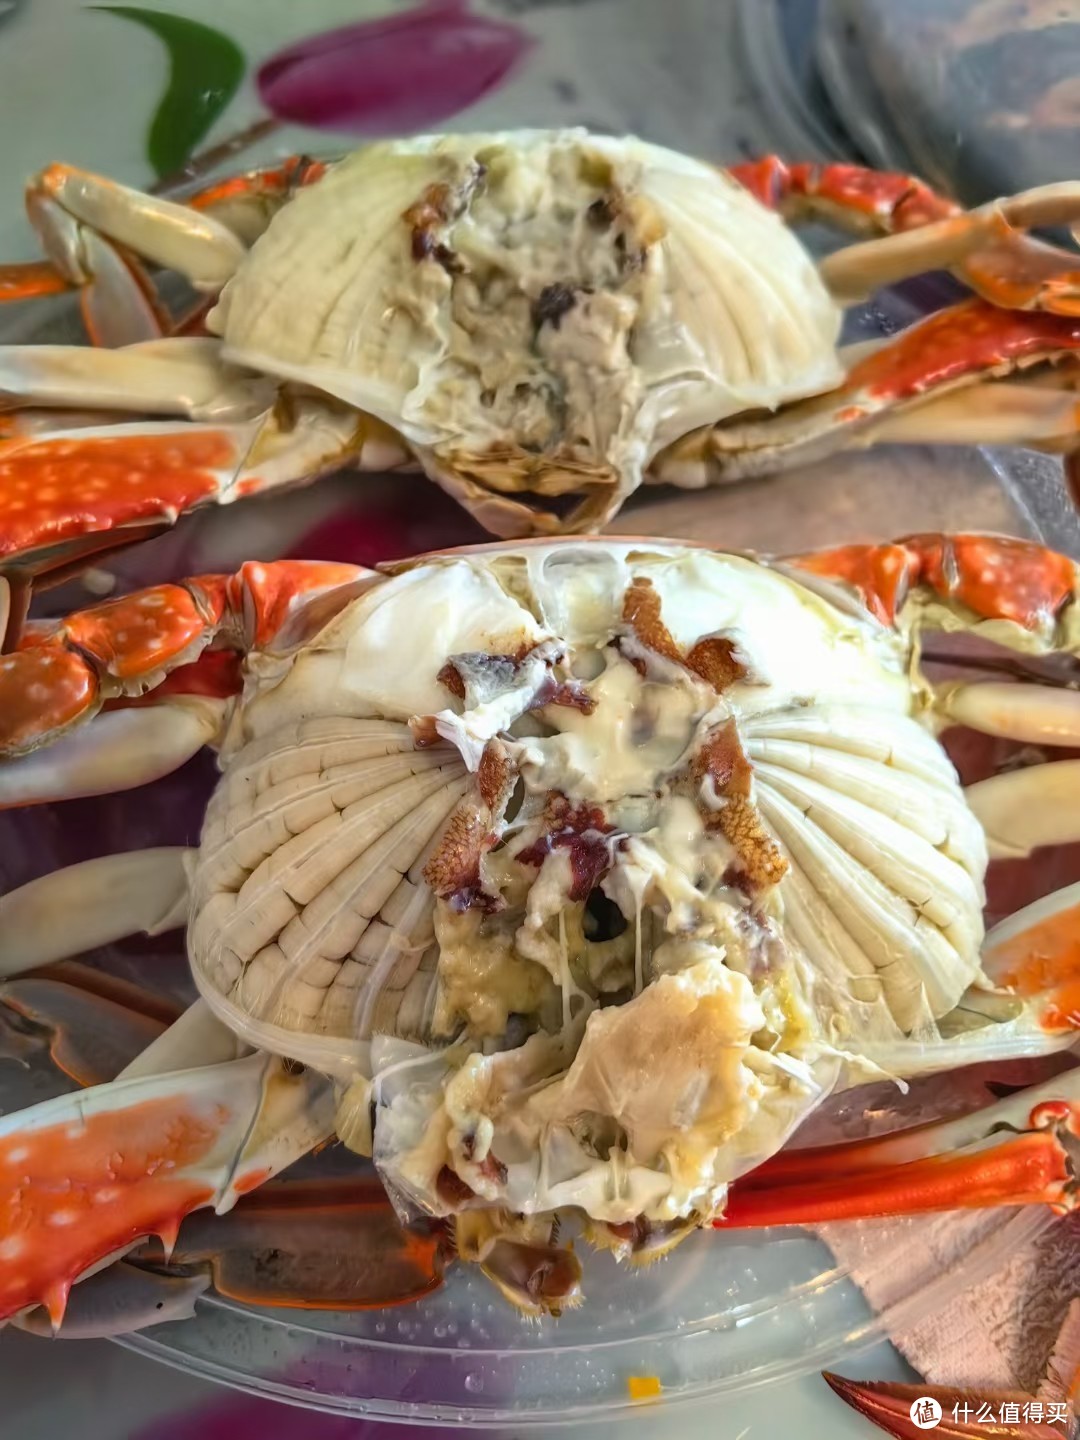 据说是山东最好的螃蟹-莱州湾梭子蟹